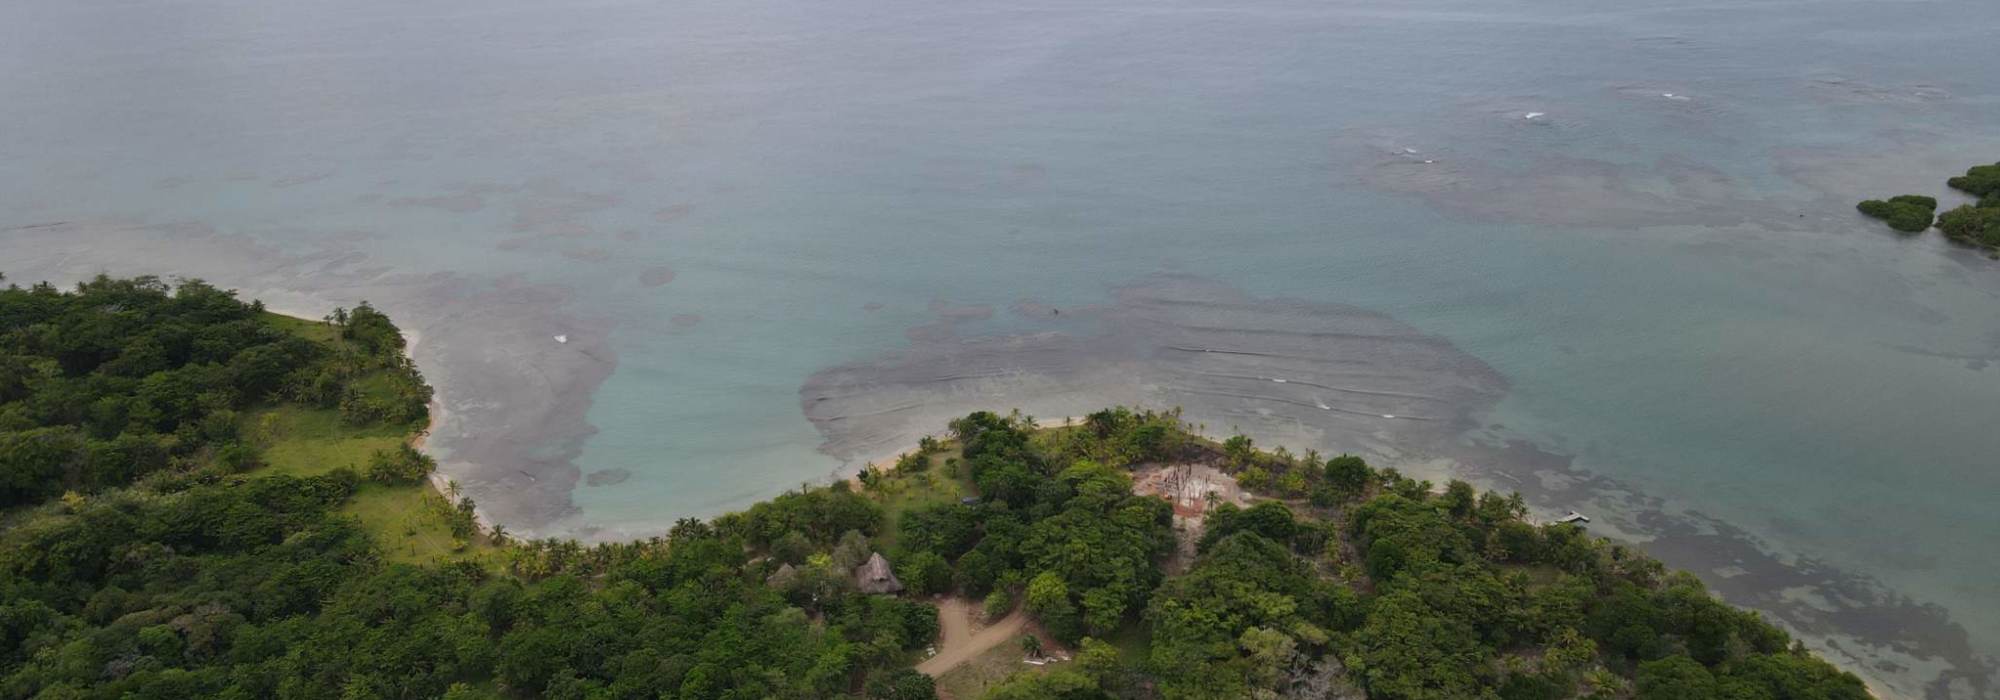 ¡Descubre el Paraíso en Panamá frente al Mar Caribe!